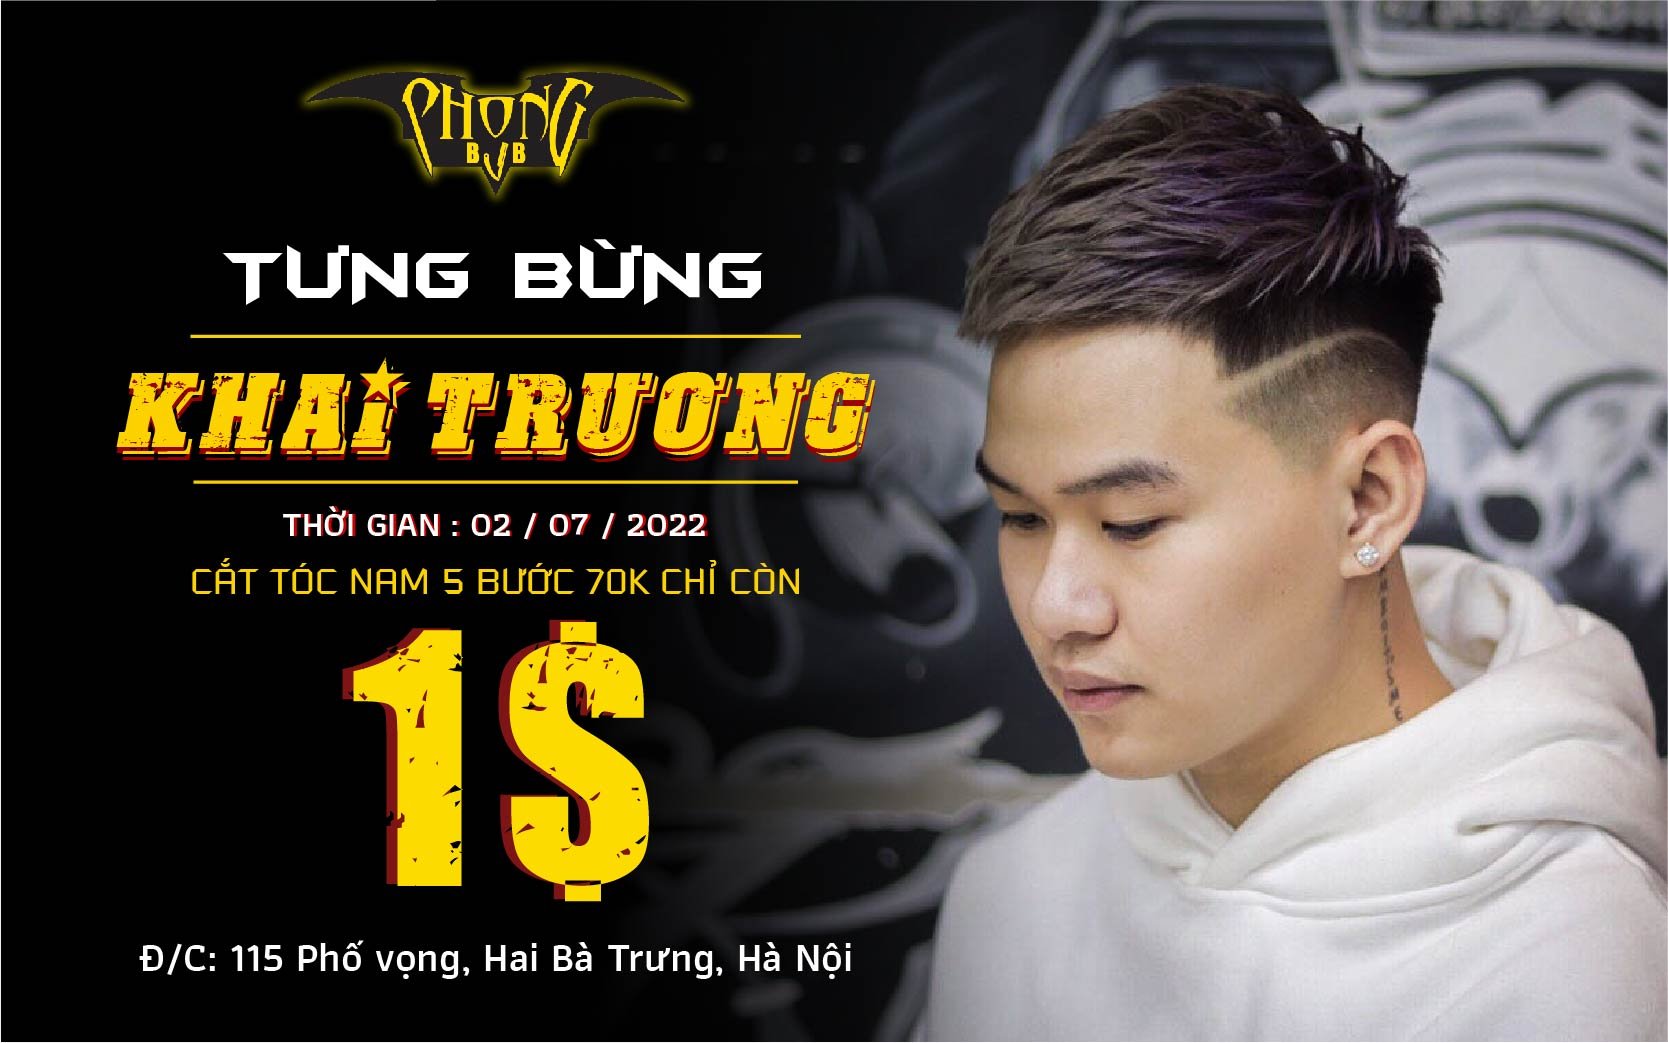 30 Men's - Chuỗi cắt tóc nam - 31 Trần Phú Long Khánh